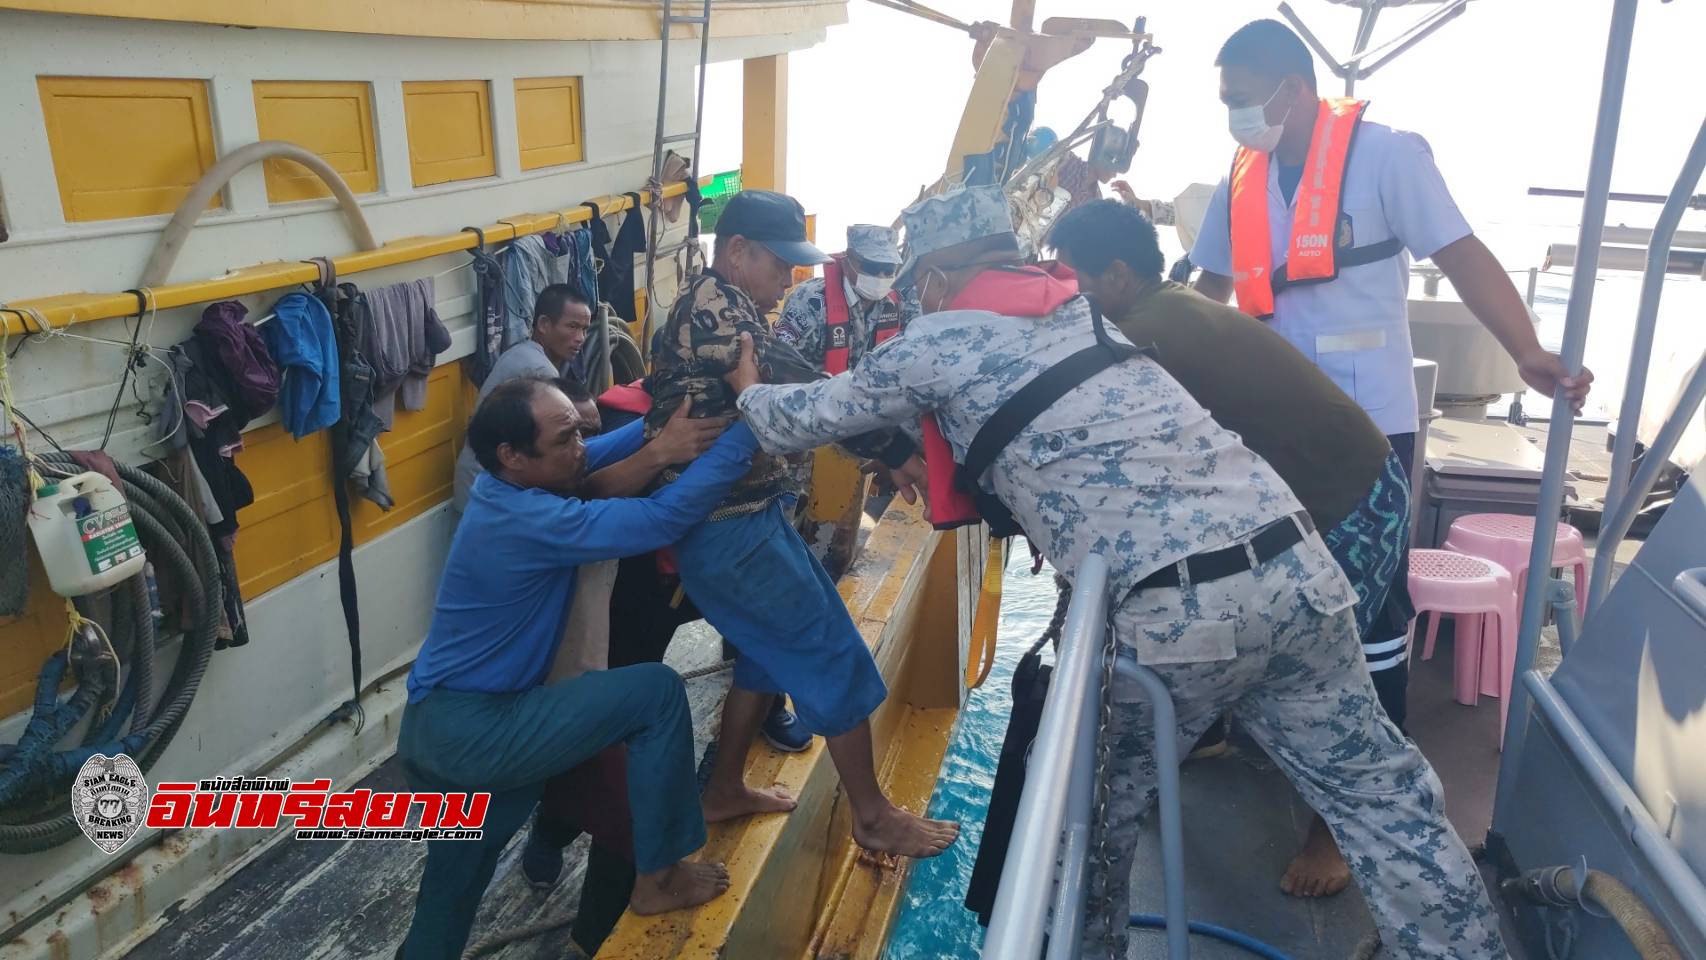 ชลบุรี-ศรชล.ภาค 1 จัดเรือพร้อมชุดแพทย์ฉุกเฉิน ช่วยเหลือลูกเรือประมงเจ็บป่วยกลางทะเล